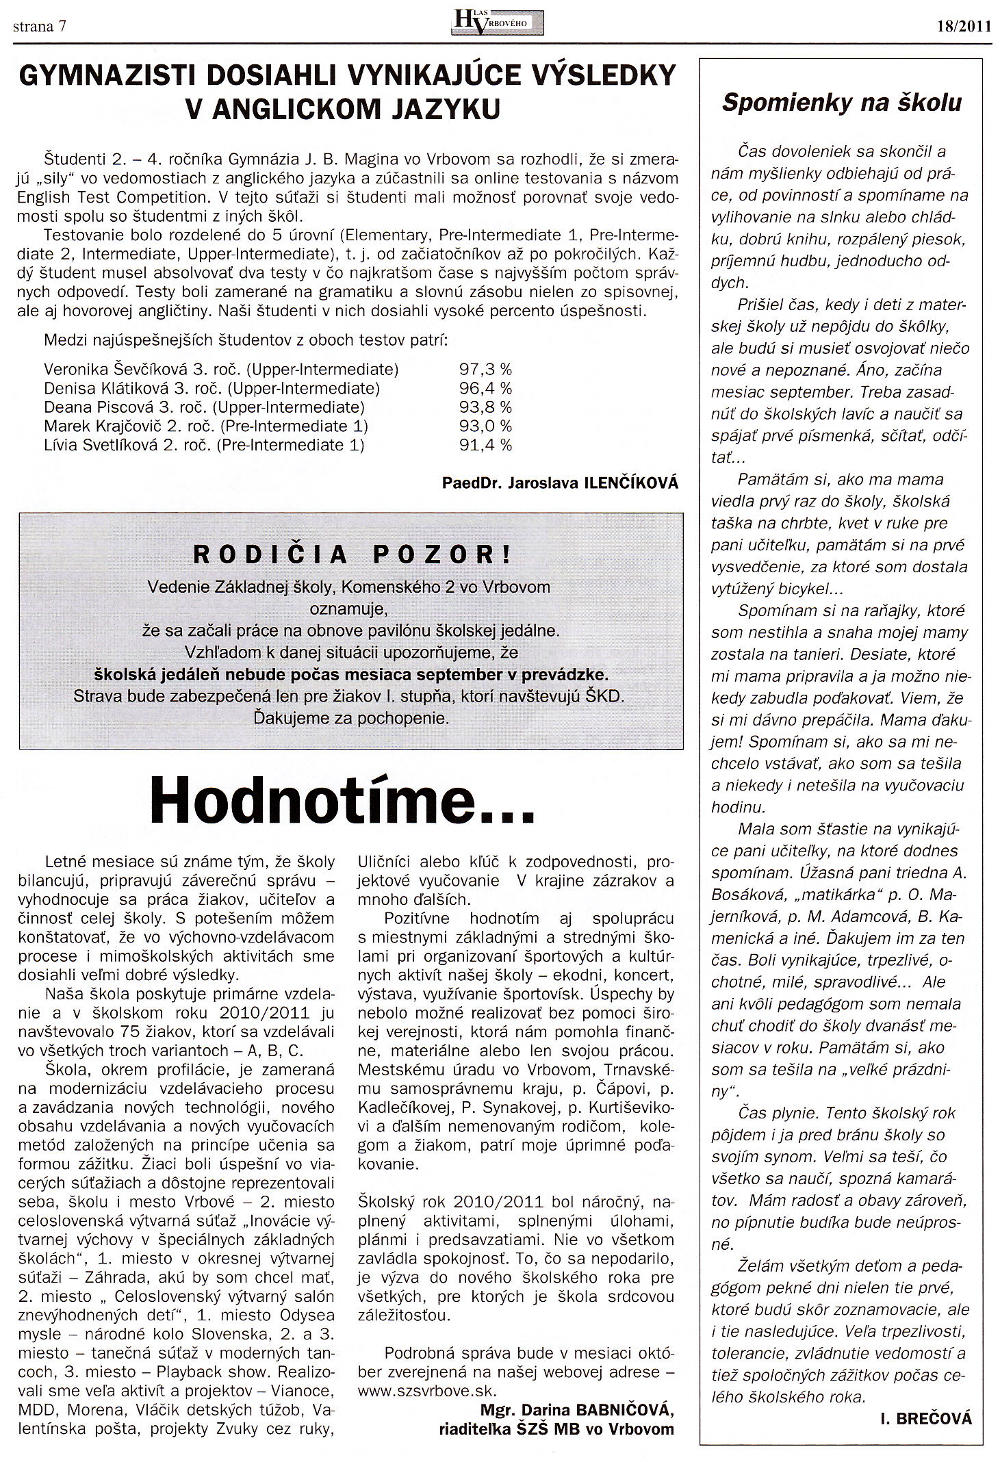 Hlas Vrbového 18/2011, strana 7